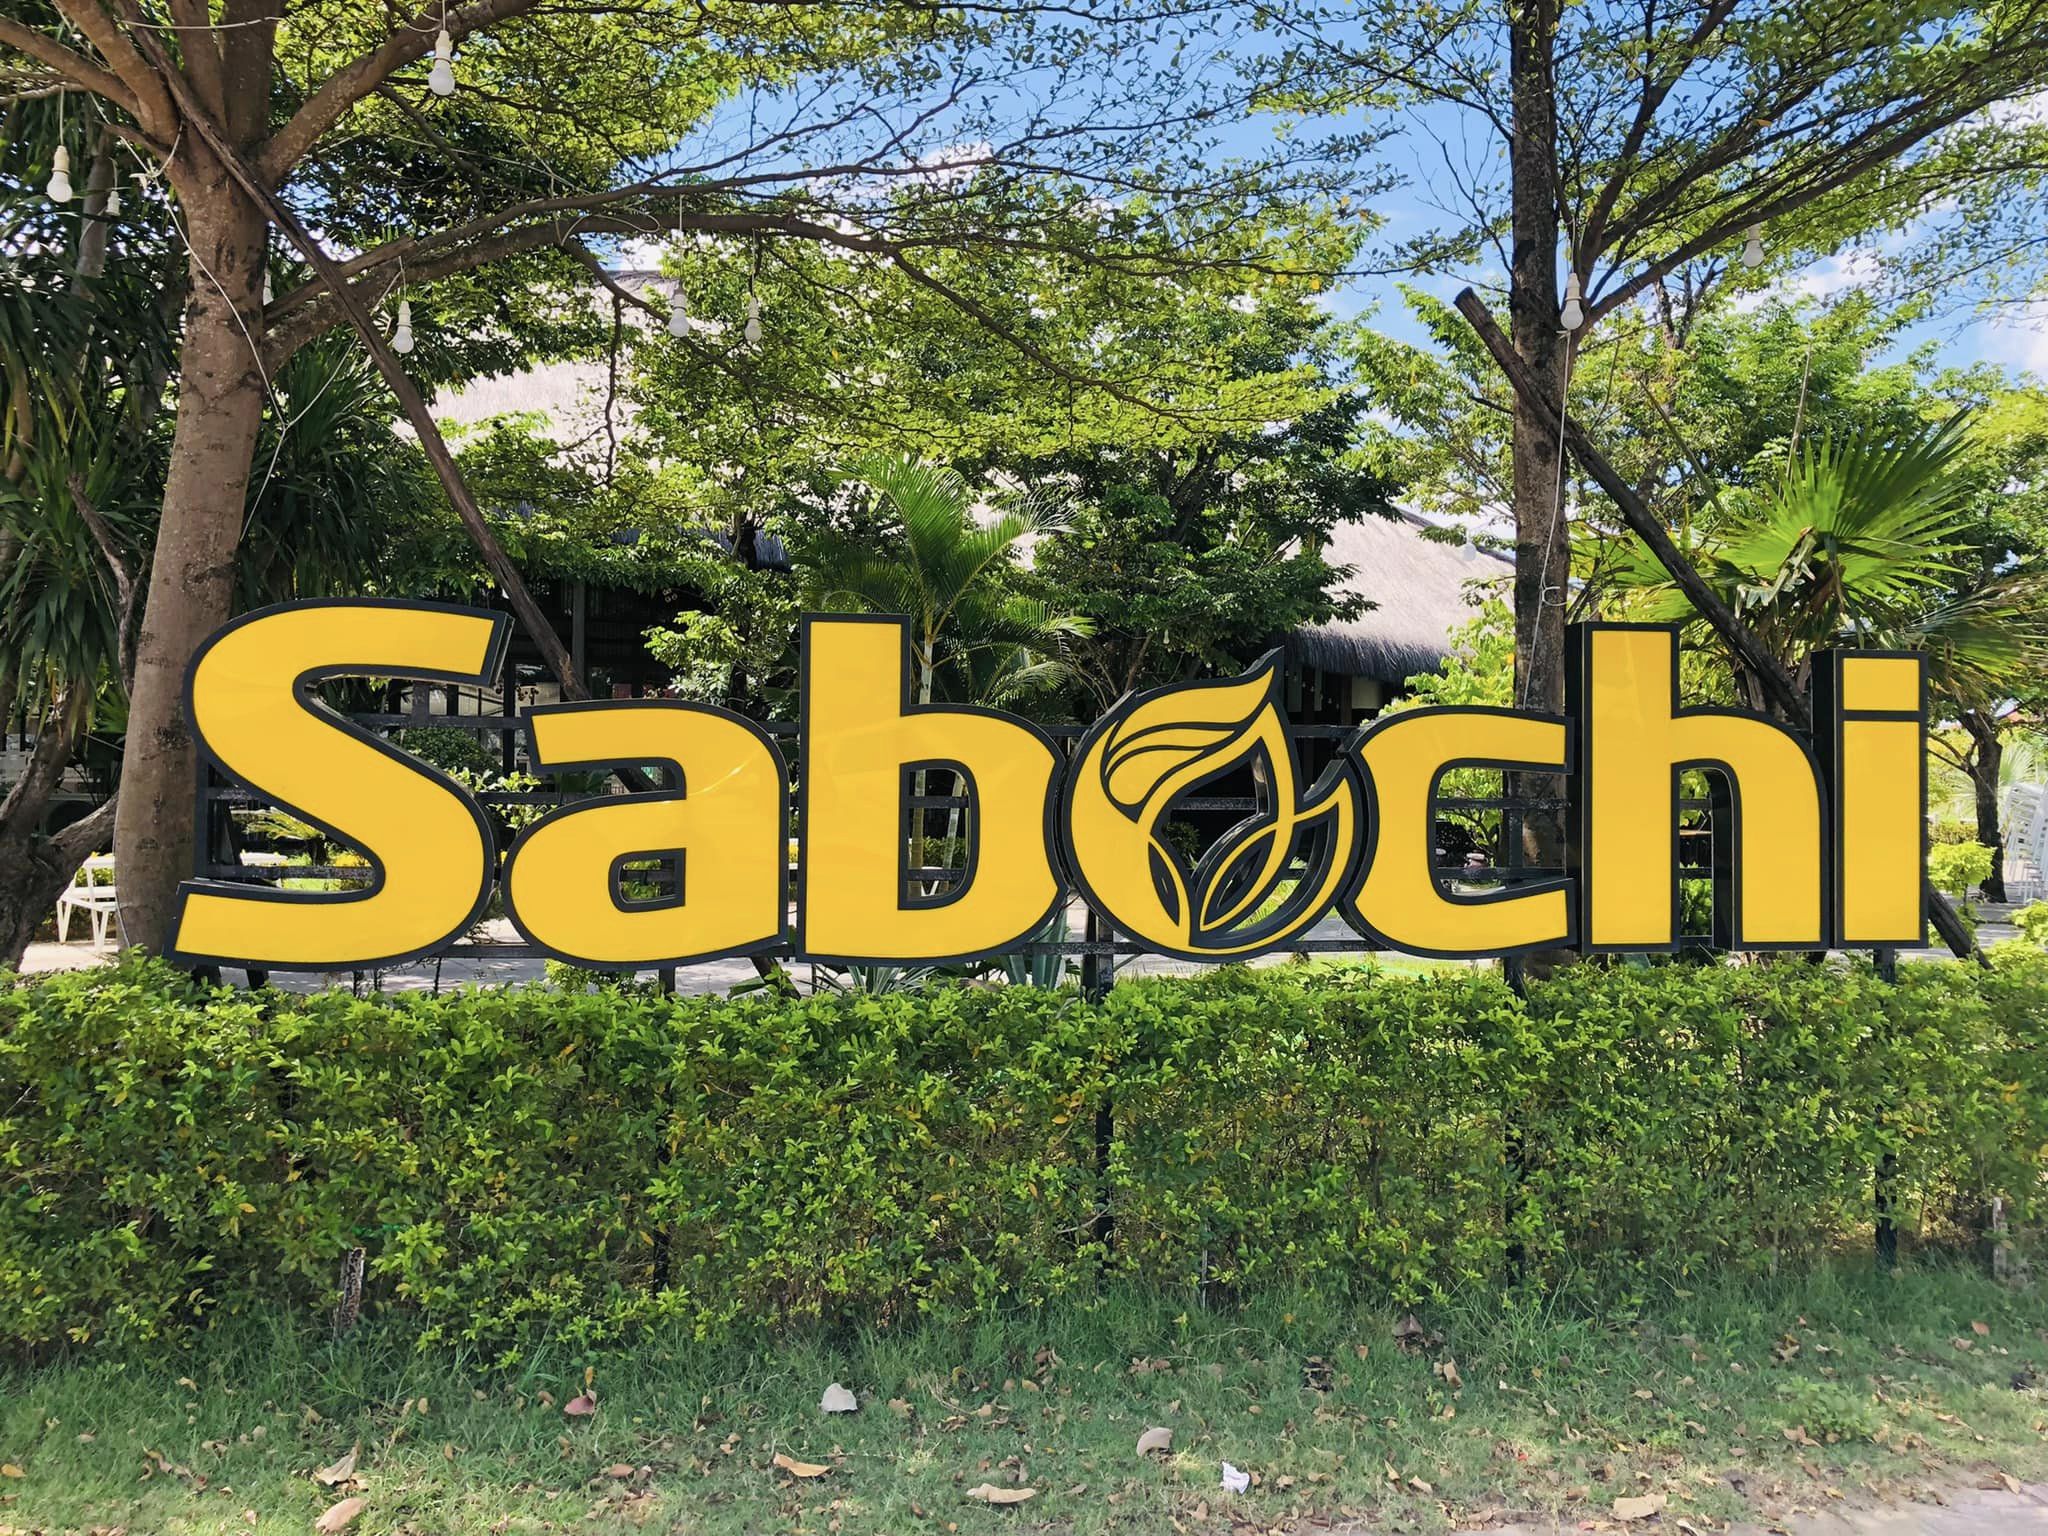 Nhà hàng Sabochi là một trong những nhà hàng đạt chuẩn phục vụ khách du lịch ở Quảng Bình